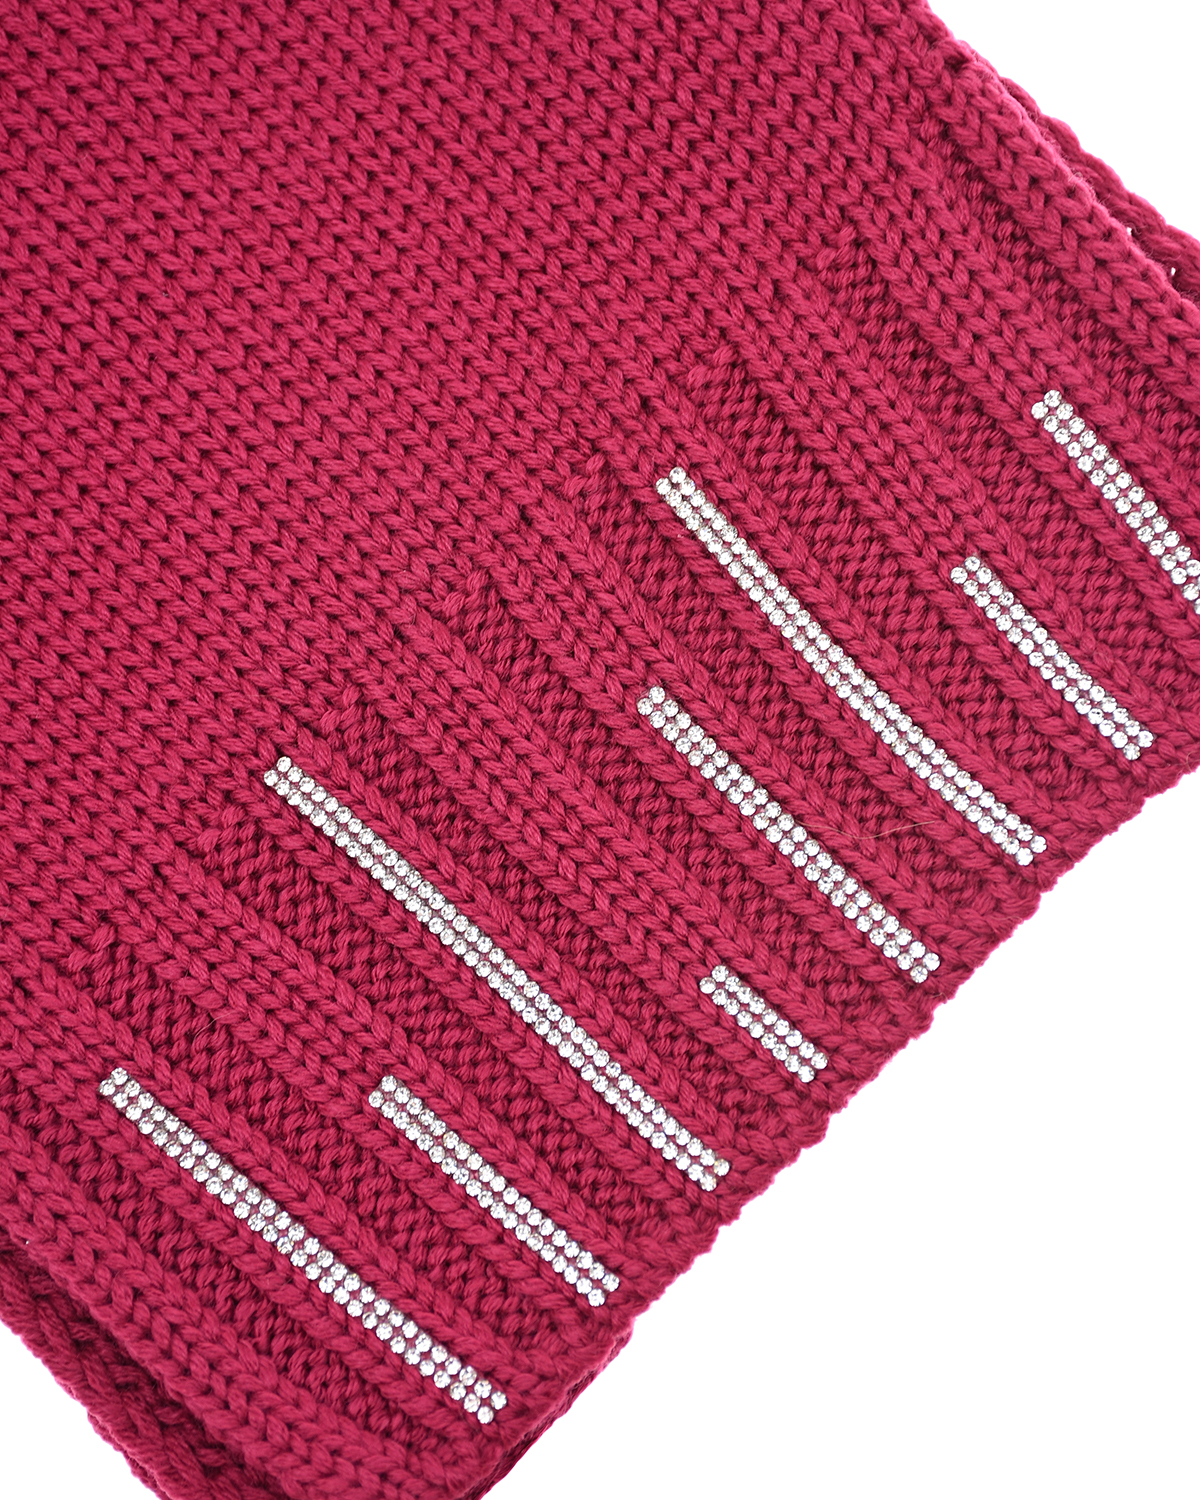 Шерстяной шарф со стразами Joli Bebe детский, размер unica, цвет розовый - фото 3